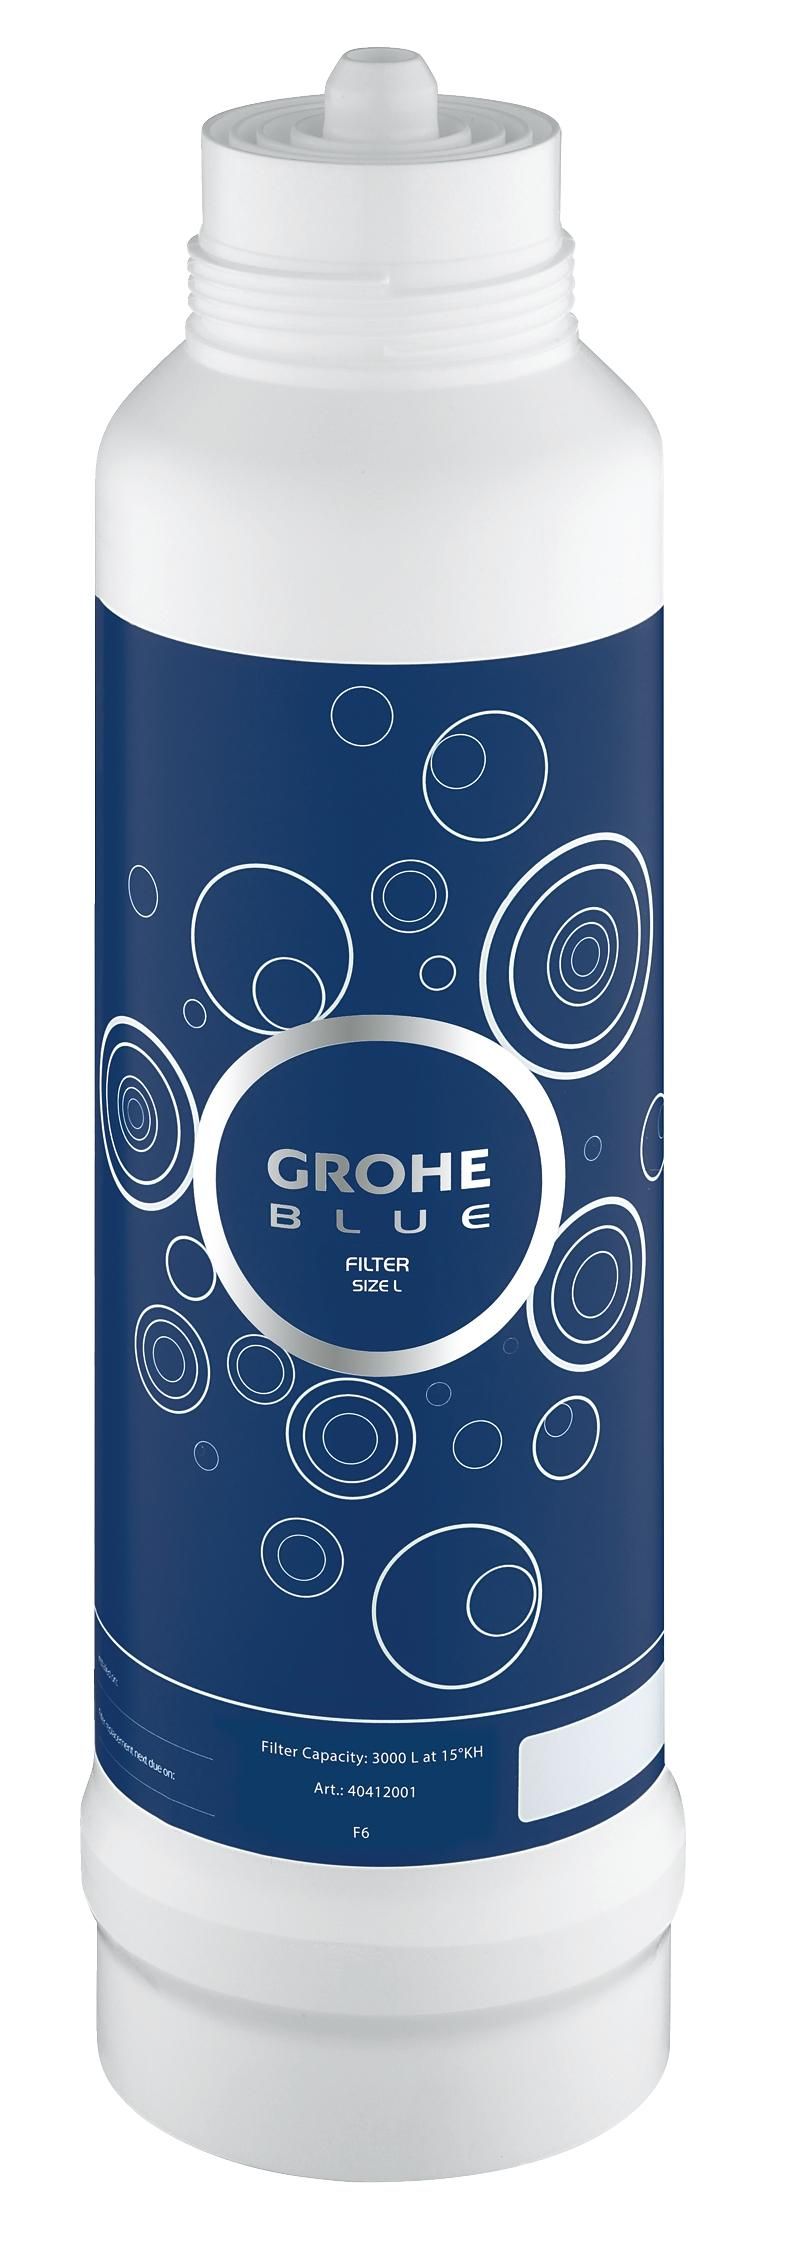 Сменный фильтр для водных систем GROHE Blue (2600 литров) new